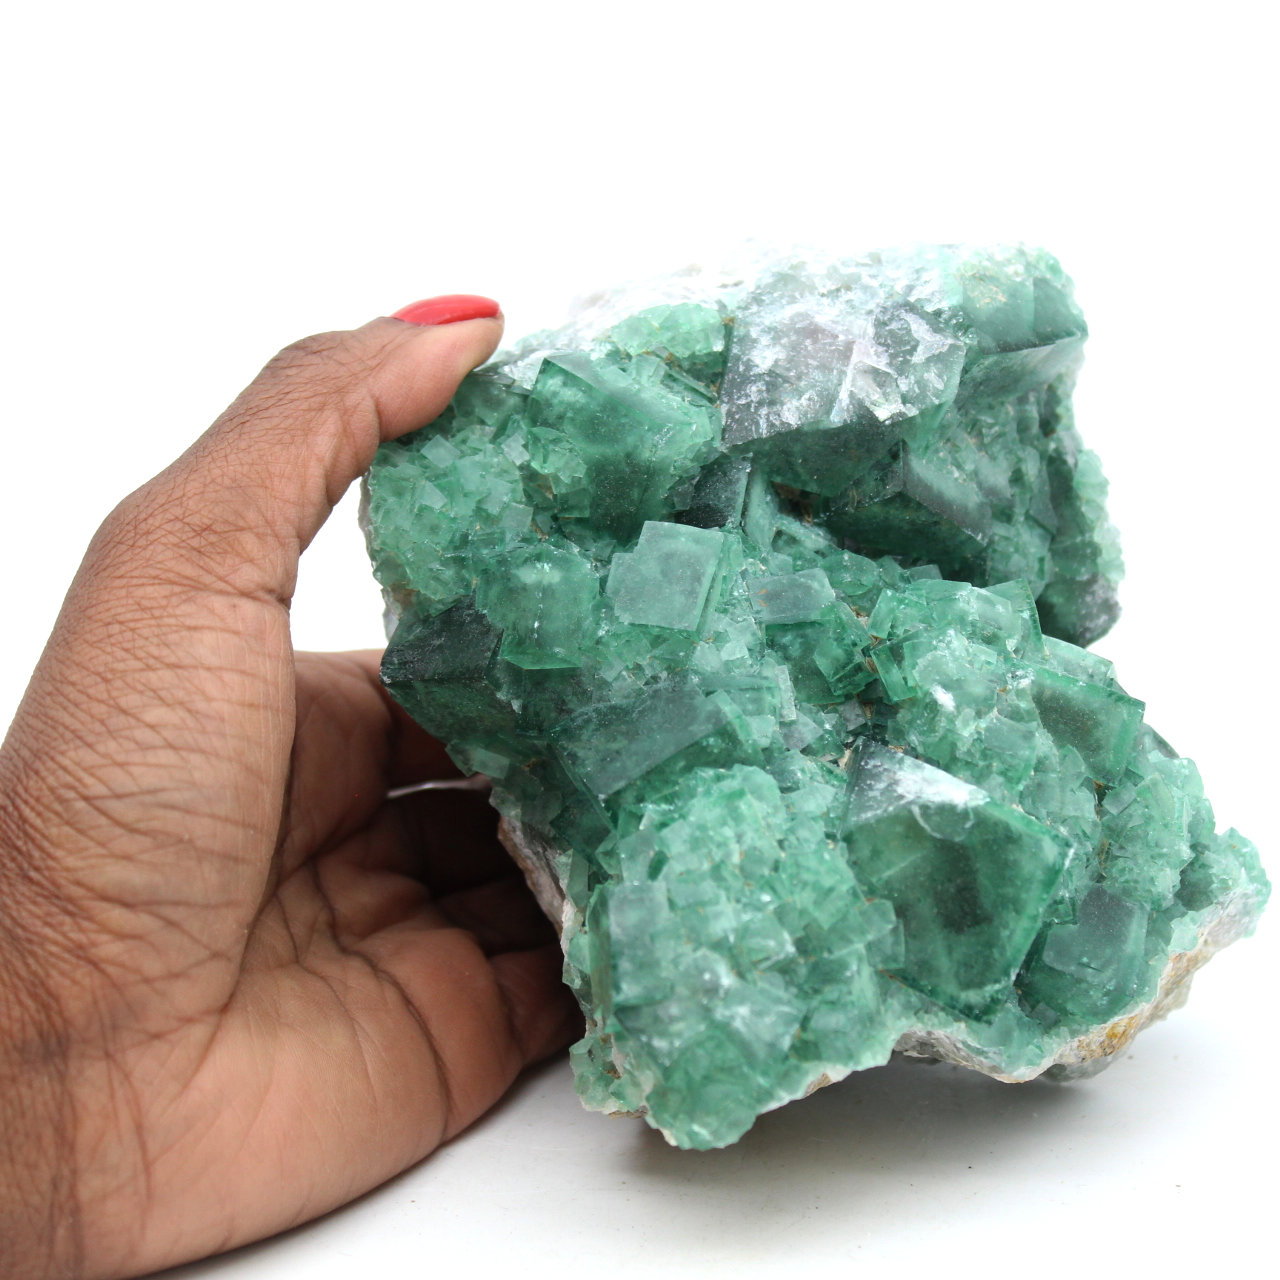 Kristalliserad naturlig grön fluorit 1,5 kilo